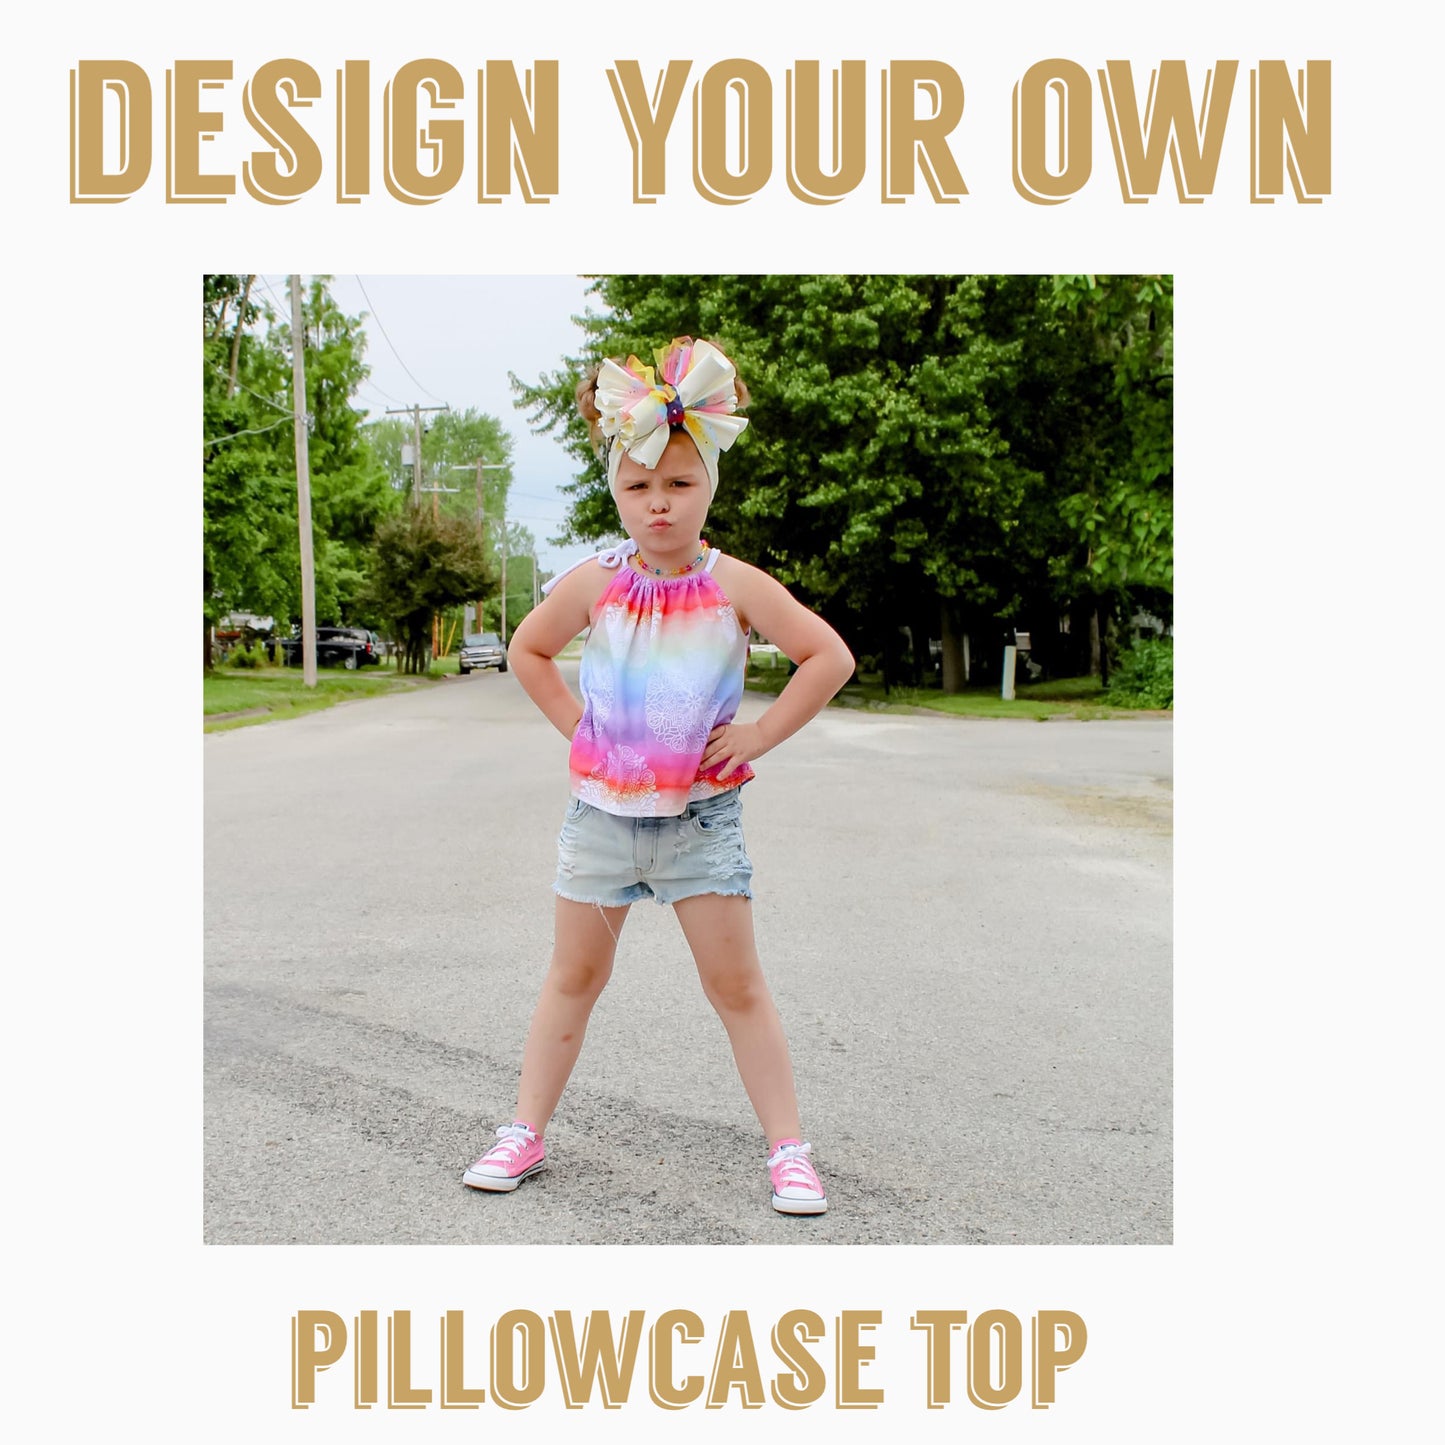 Design Your Own| Pillowcase top